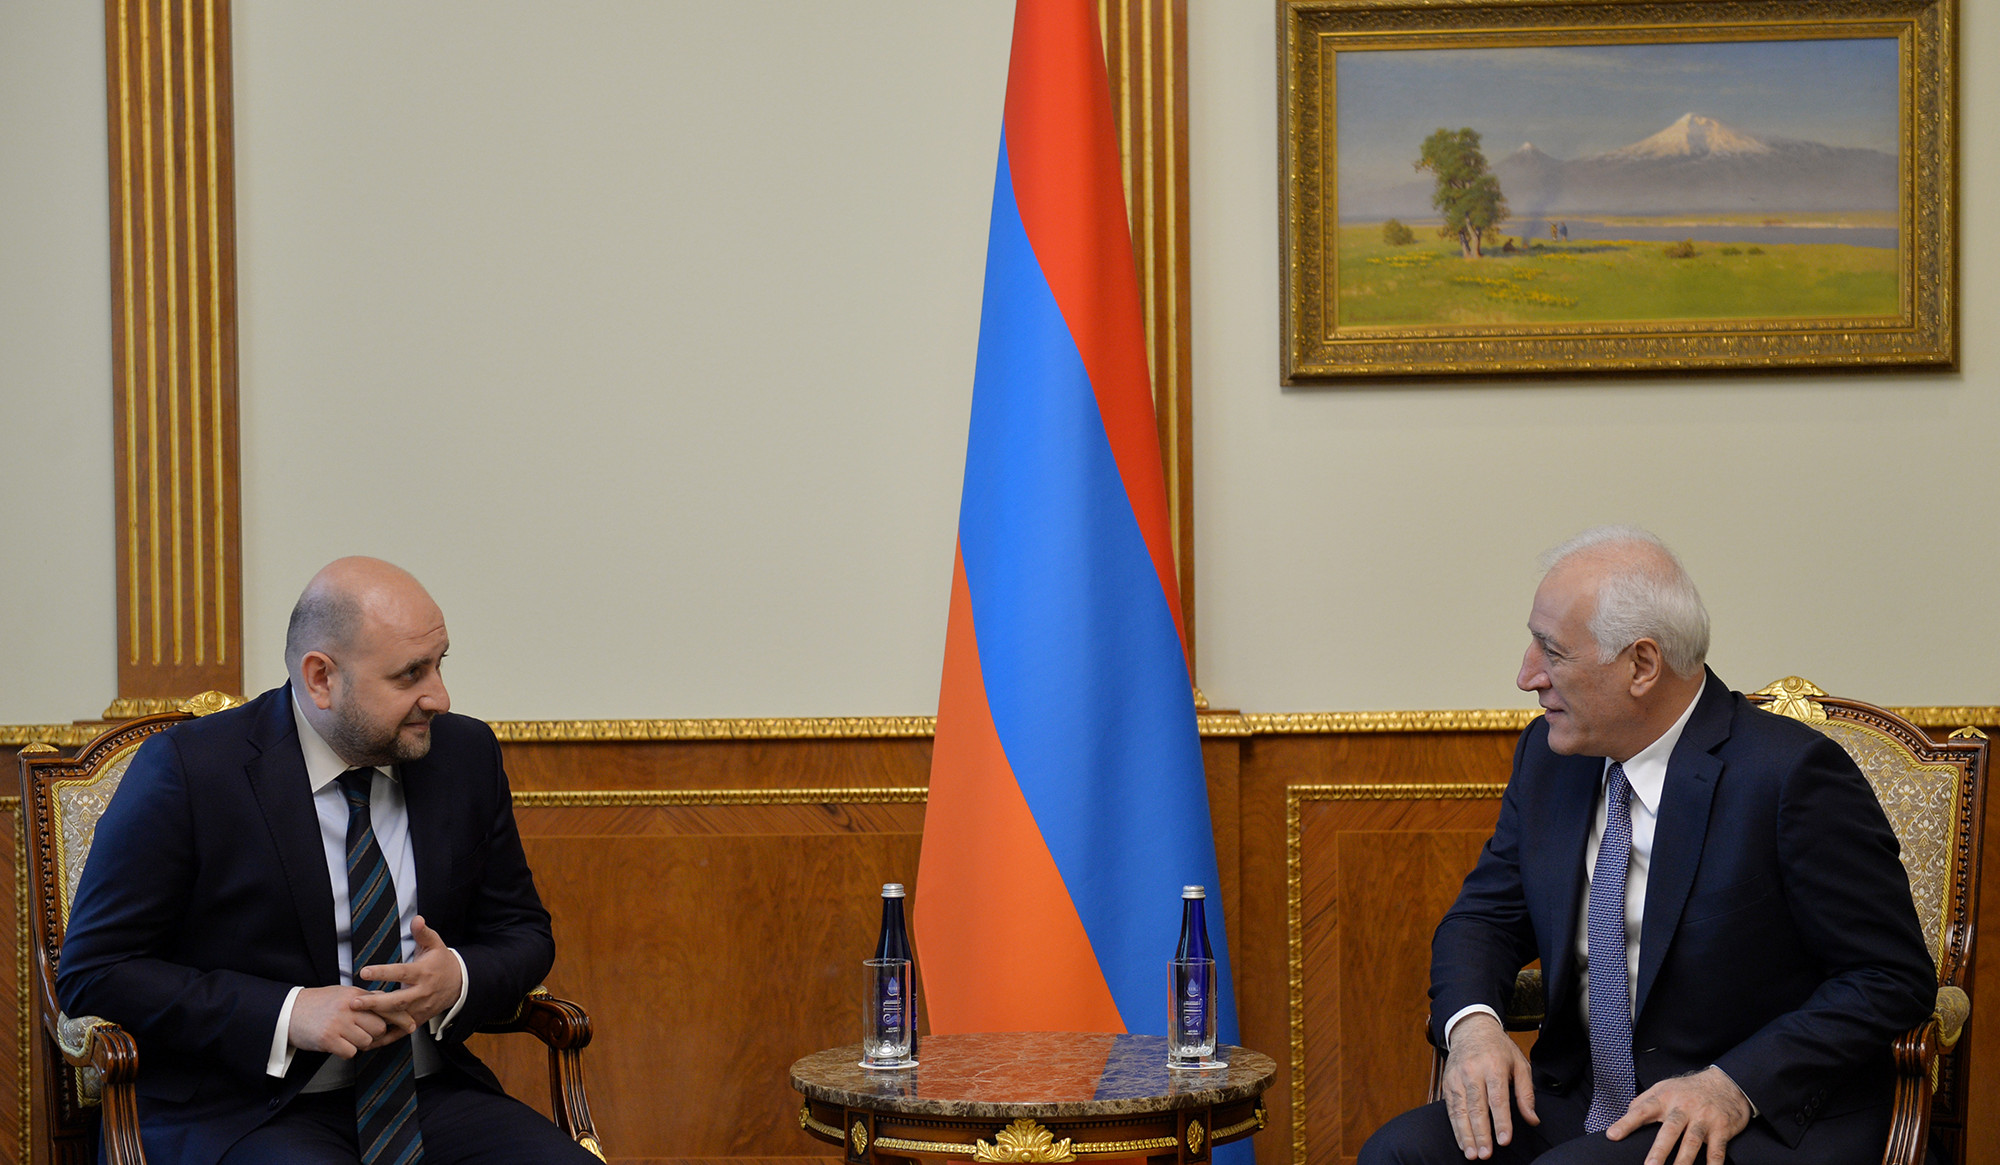 Նախագահը և ԿԲ նախագահը քննարկել են Հայաստանի ֆինանսական շուկային վերաբերող հարցեր